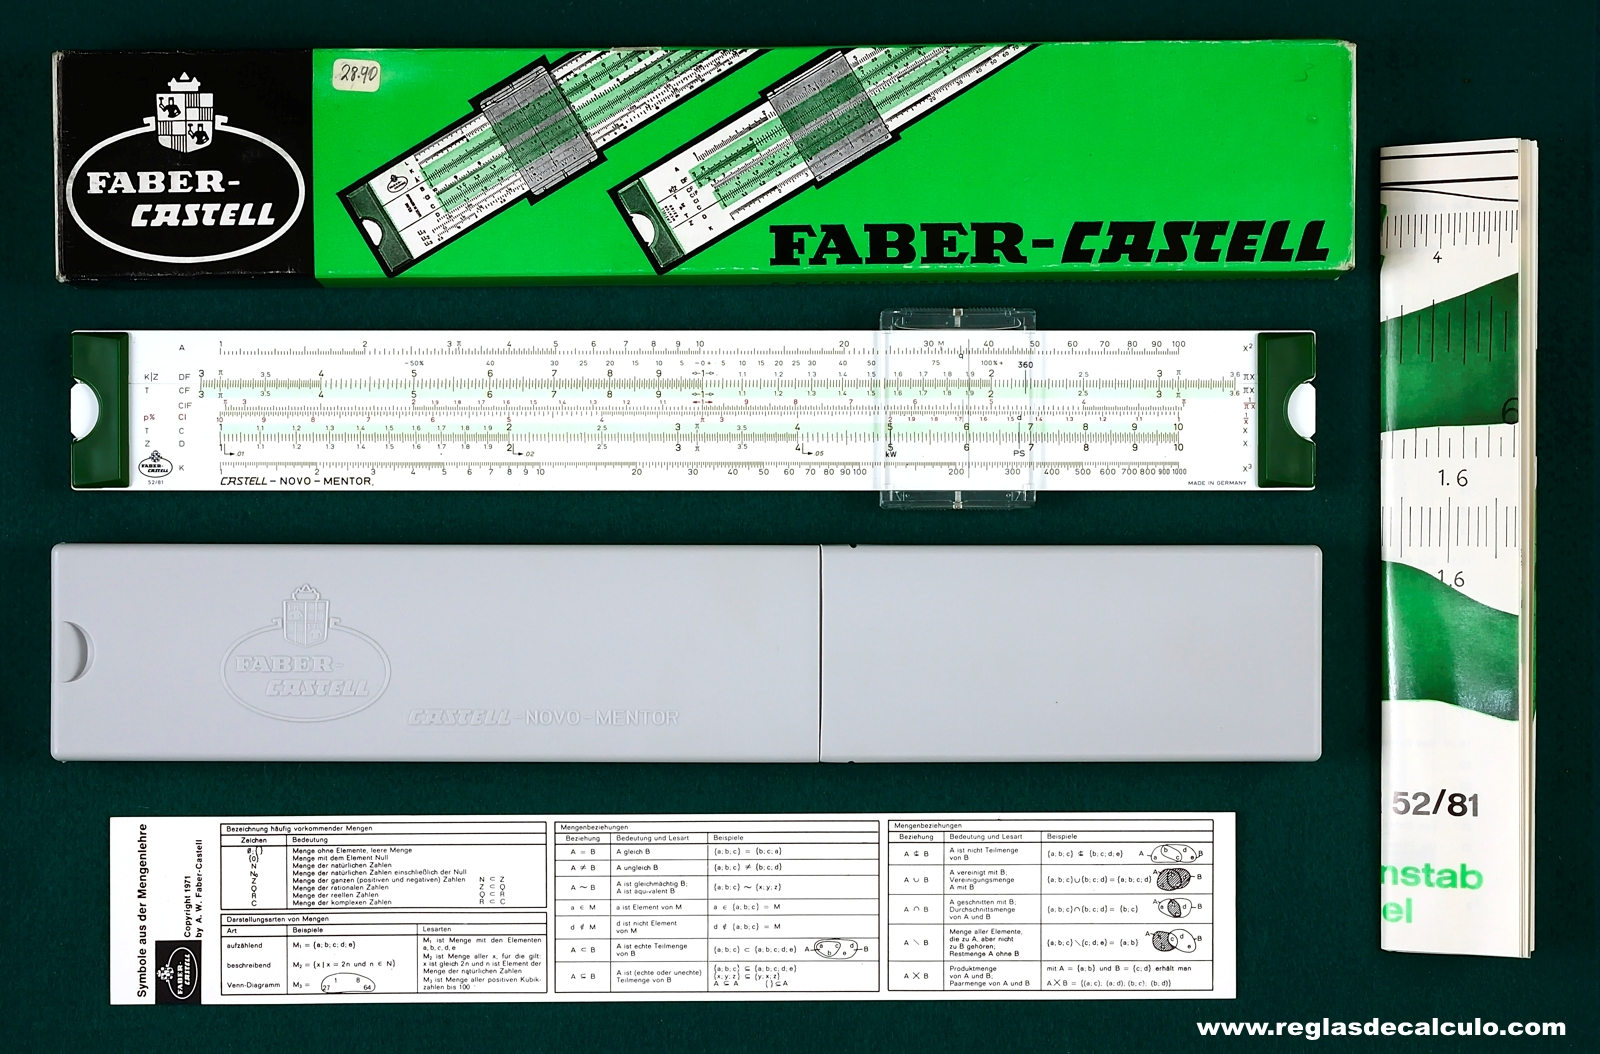 Regla de Calculo Slide rule Faber Castell 52/81